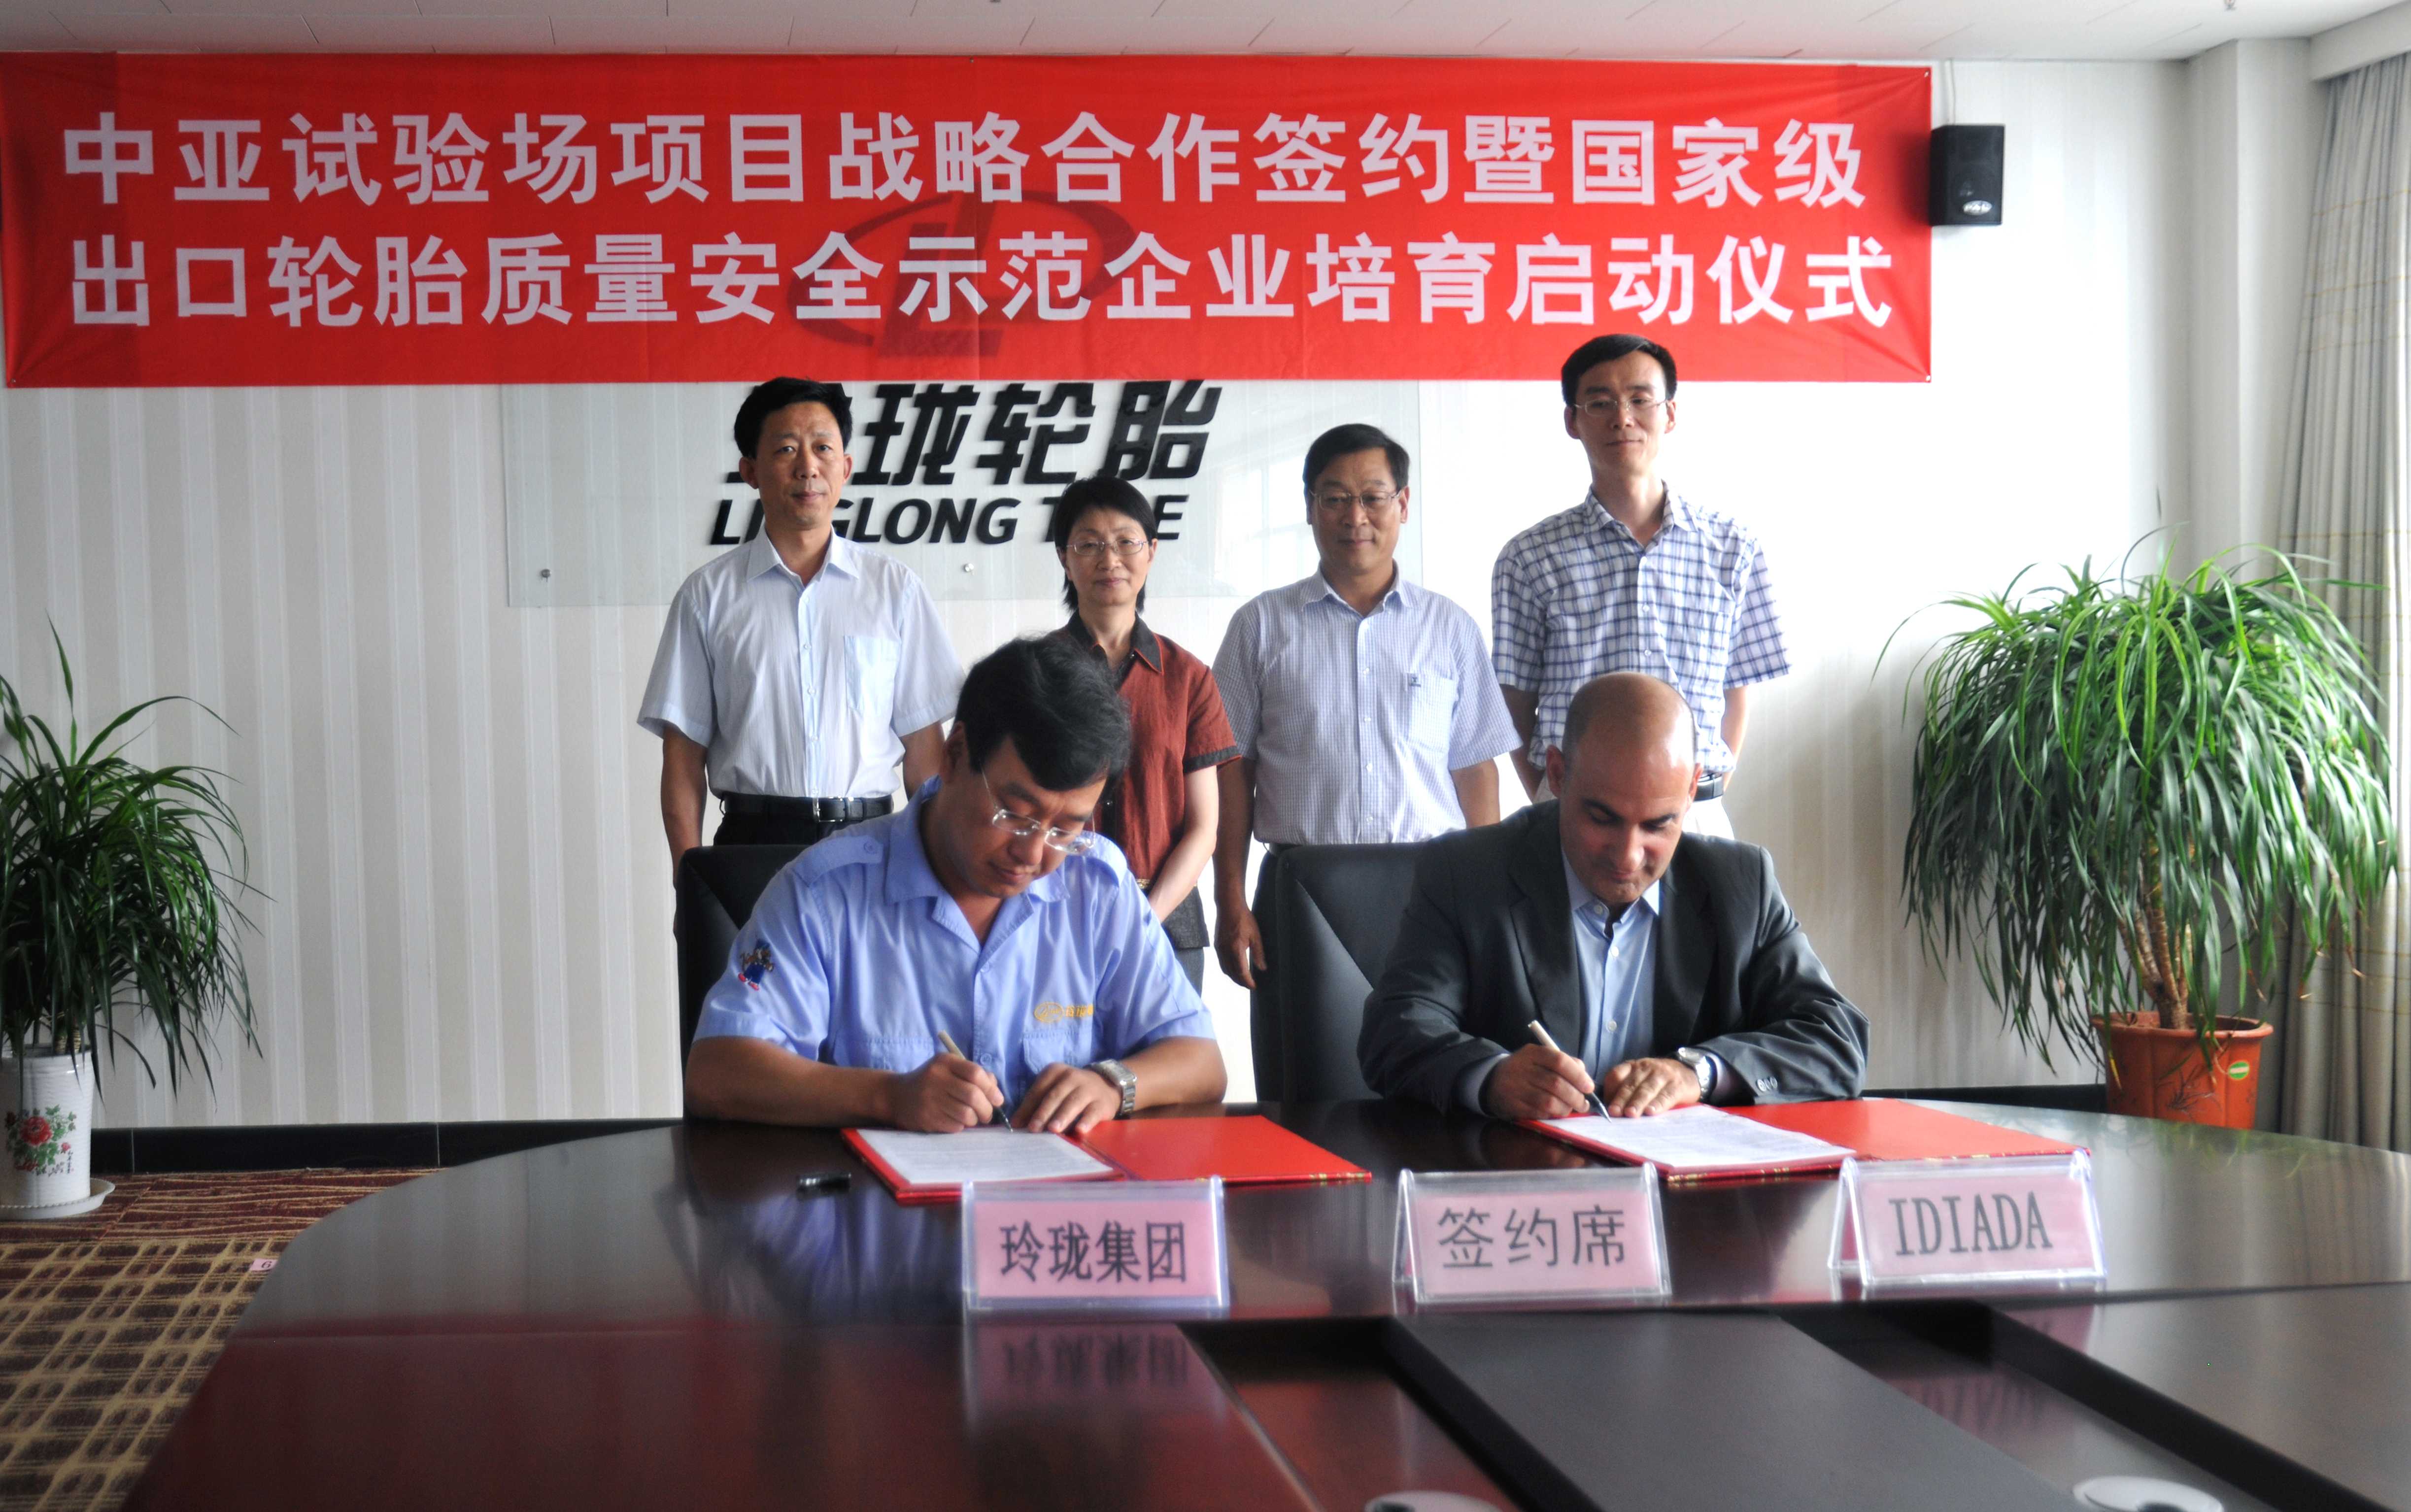 Linglong and IDIADA signing